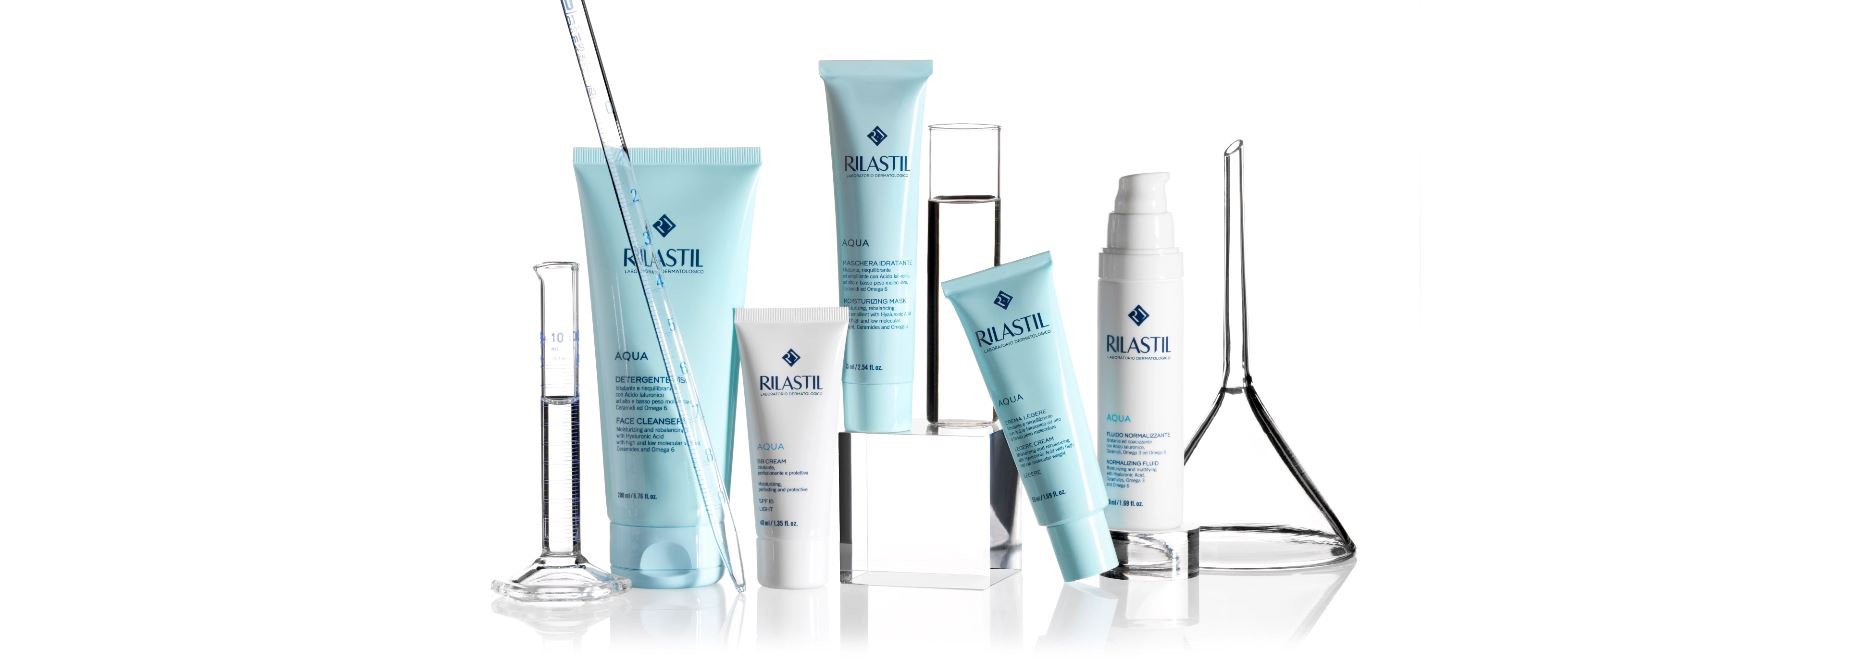 RILASTIL Aqua Products